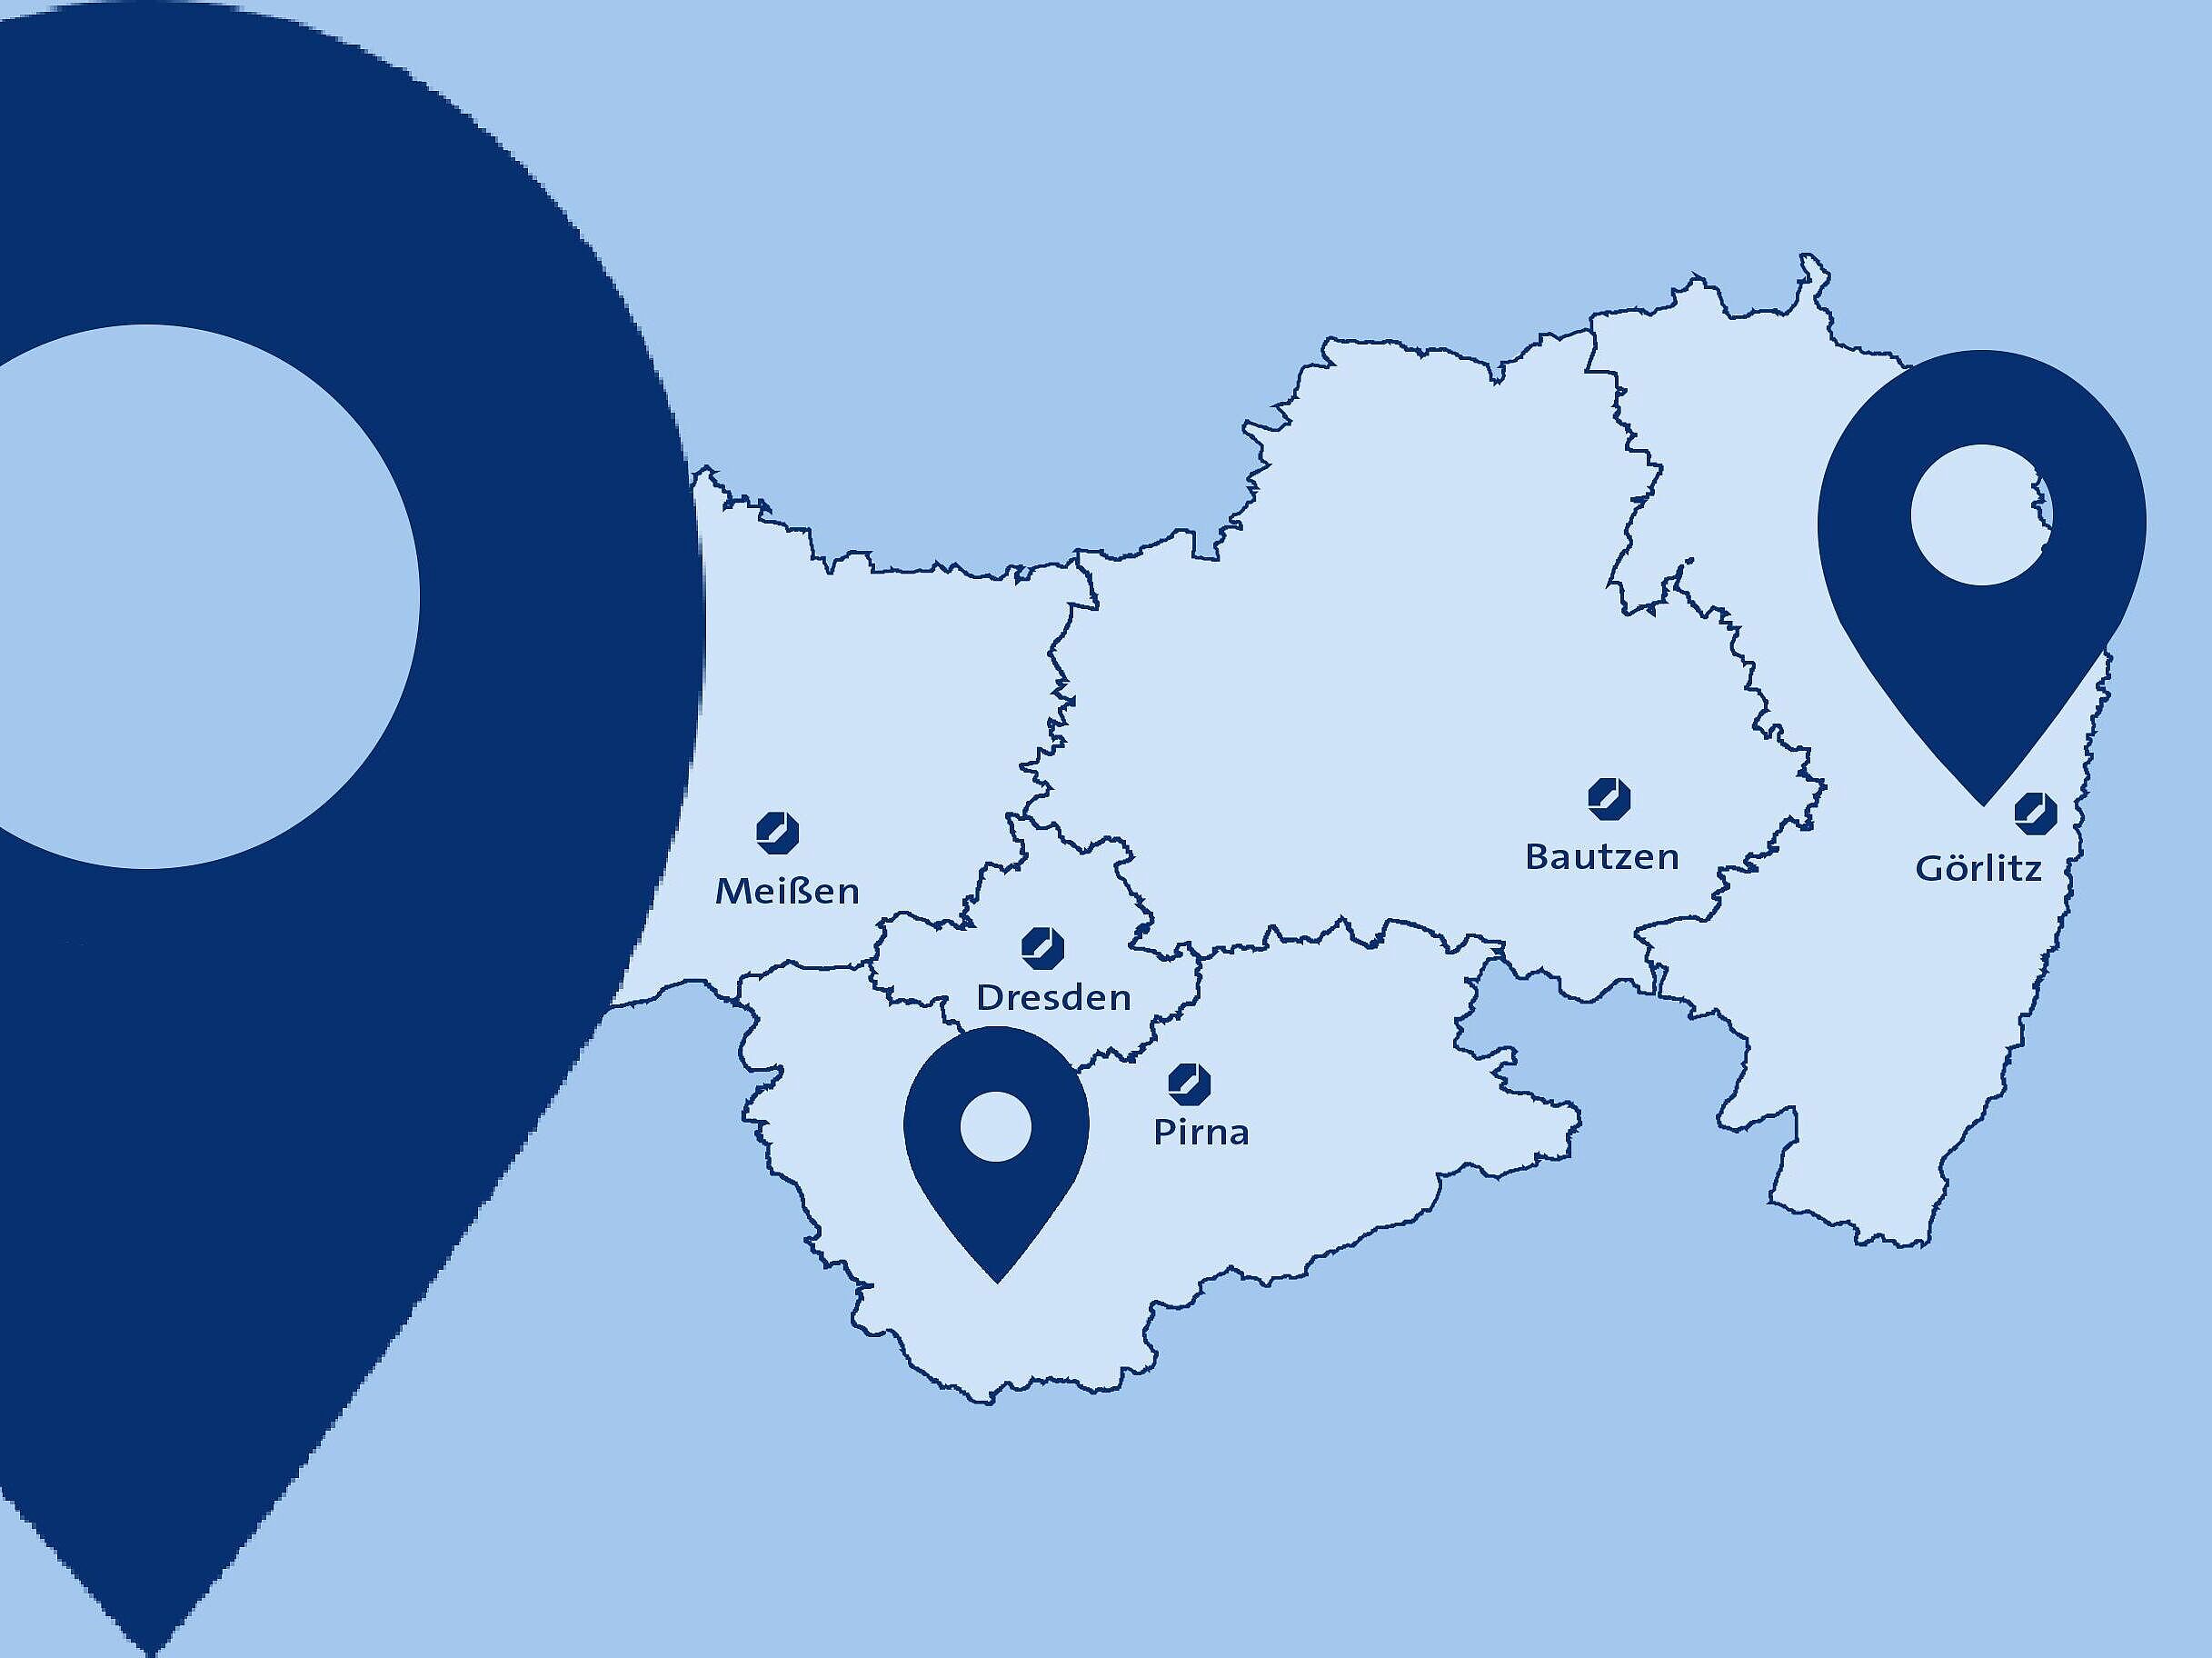 Hellblauer Hintergrund mit einer Karte der Landesdirektion Dresden, darauf dunkelblaue Pin-Marker die beliebe Standorte auf der Karte markieren.